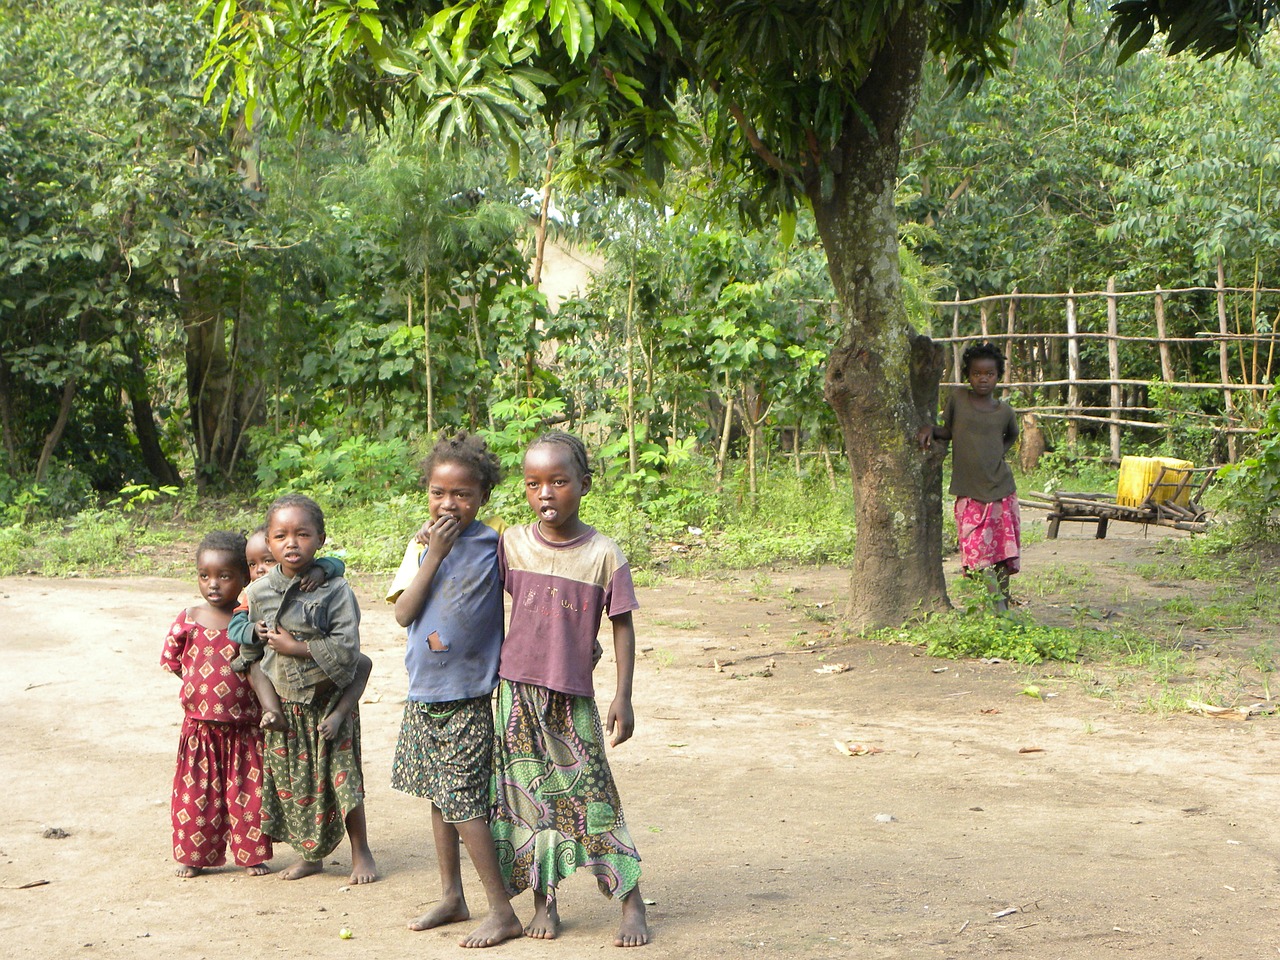 ethiopia children poverty free photo